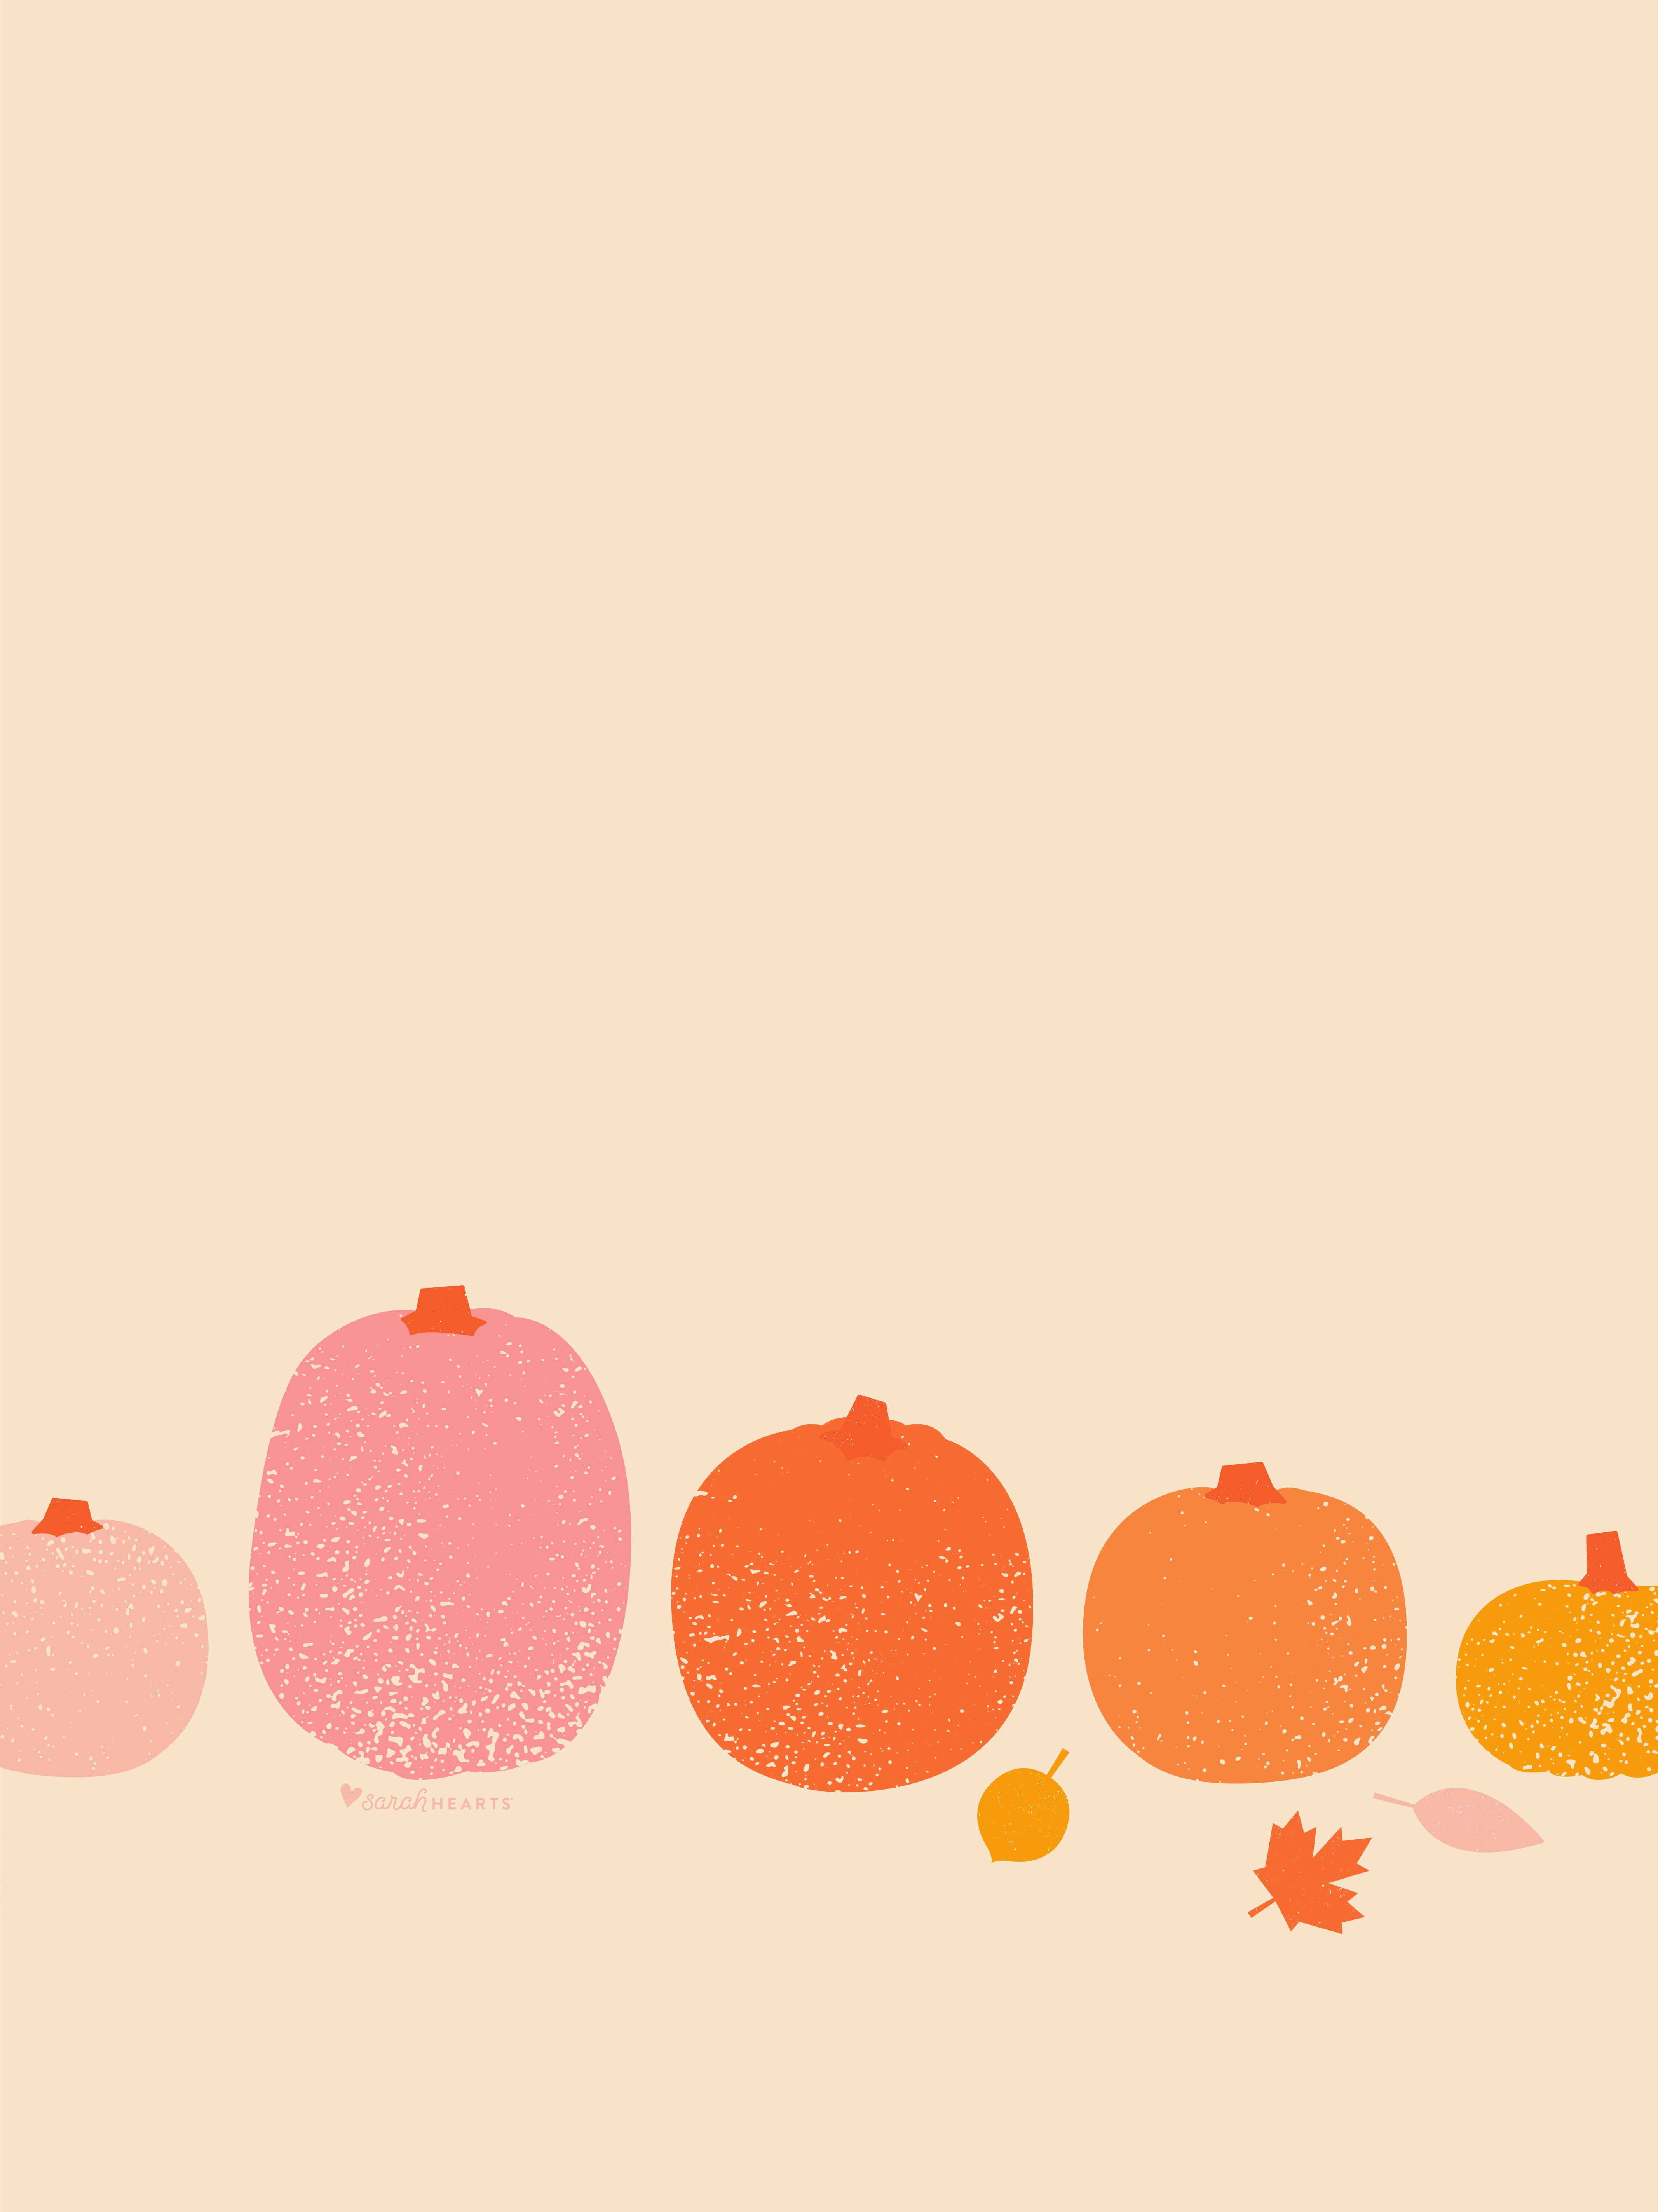 October 2019 Pumpkin Calendar Wallpaper